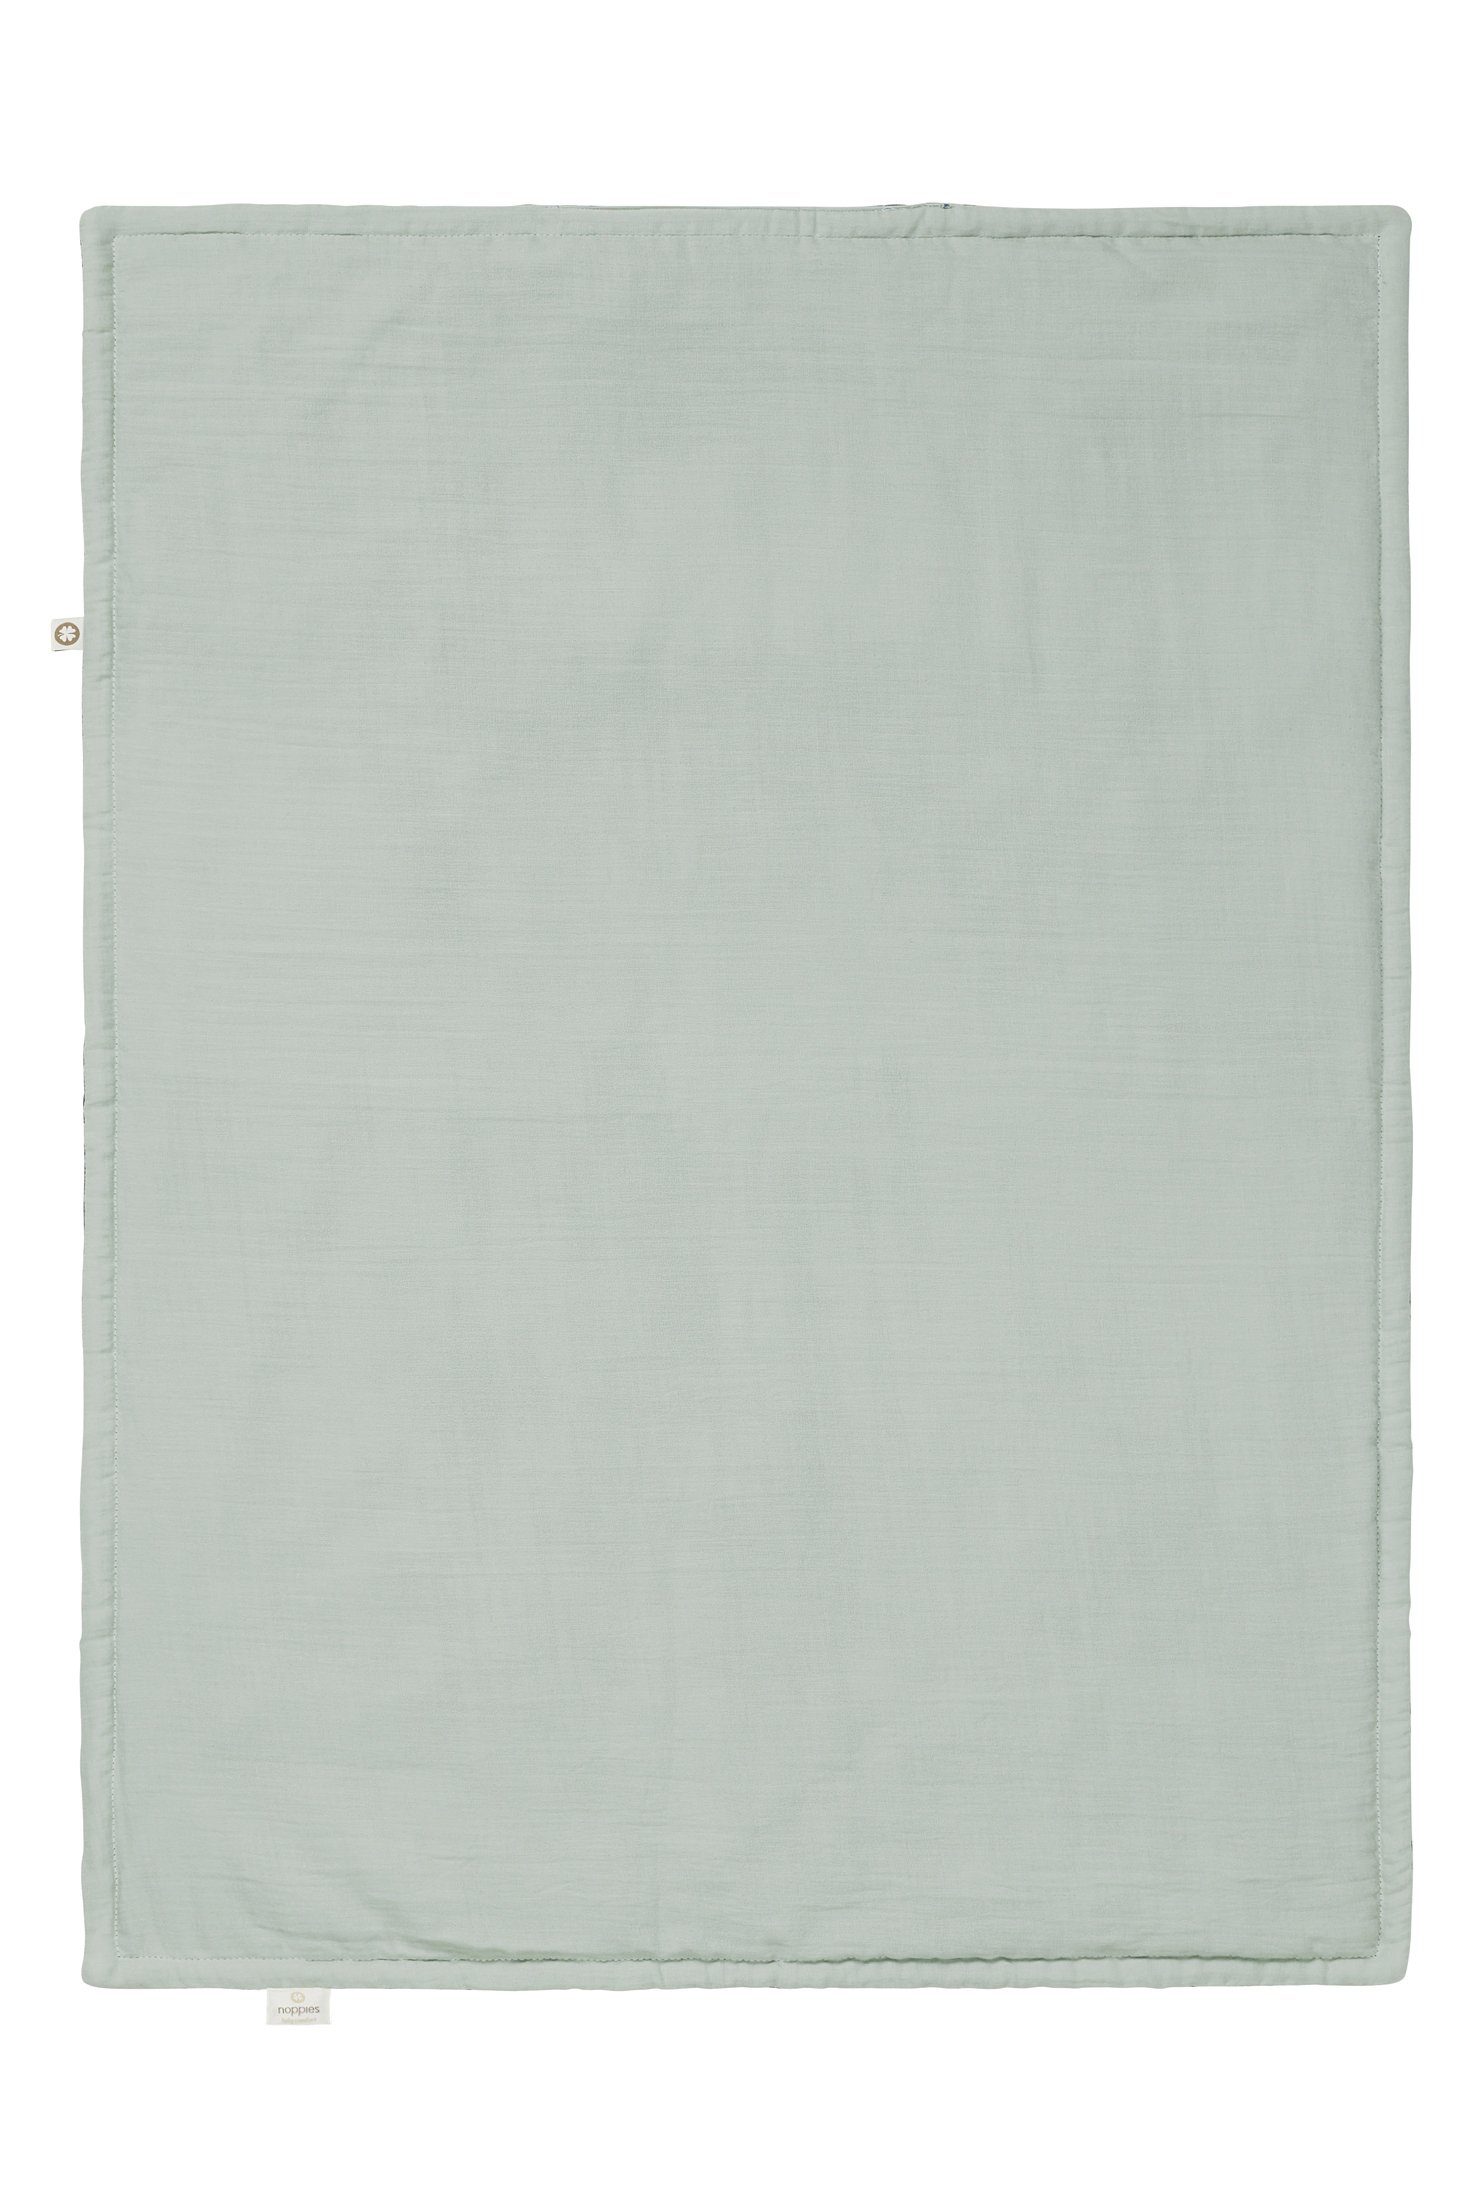 Noppies Noppies Puritan Gray Decke Wiege Babydecke für cm, die Filled 75x100